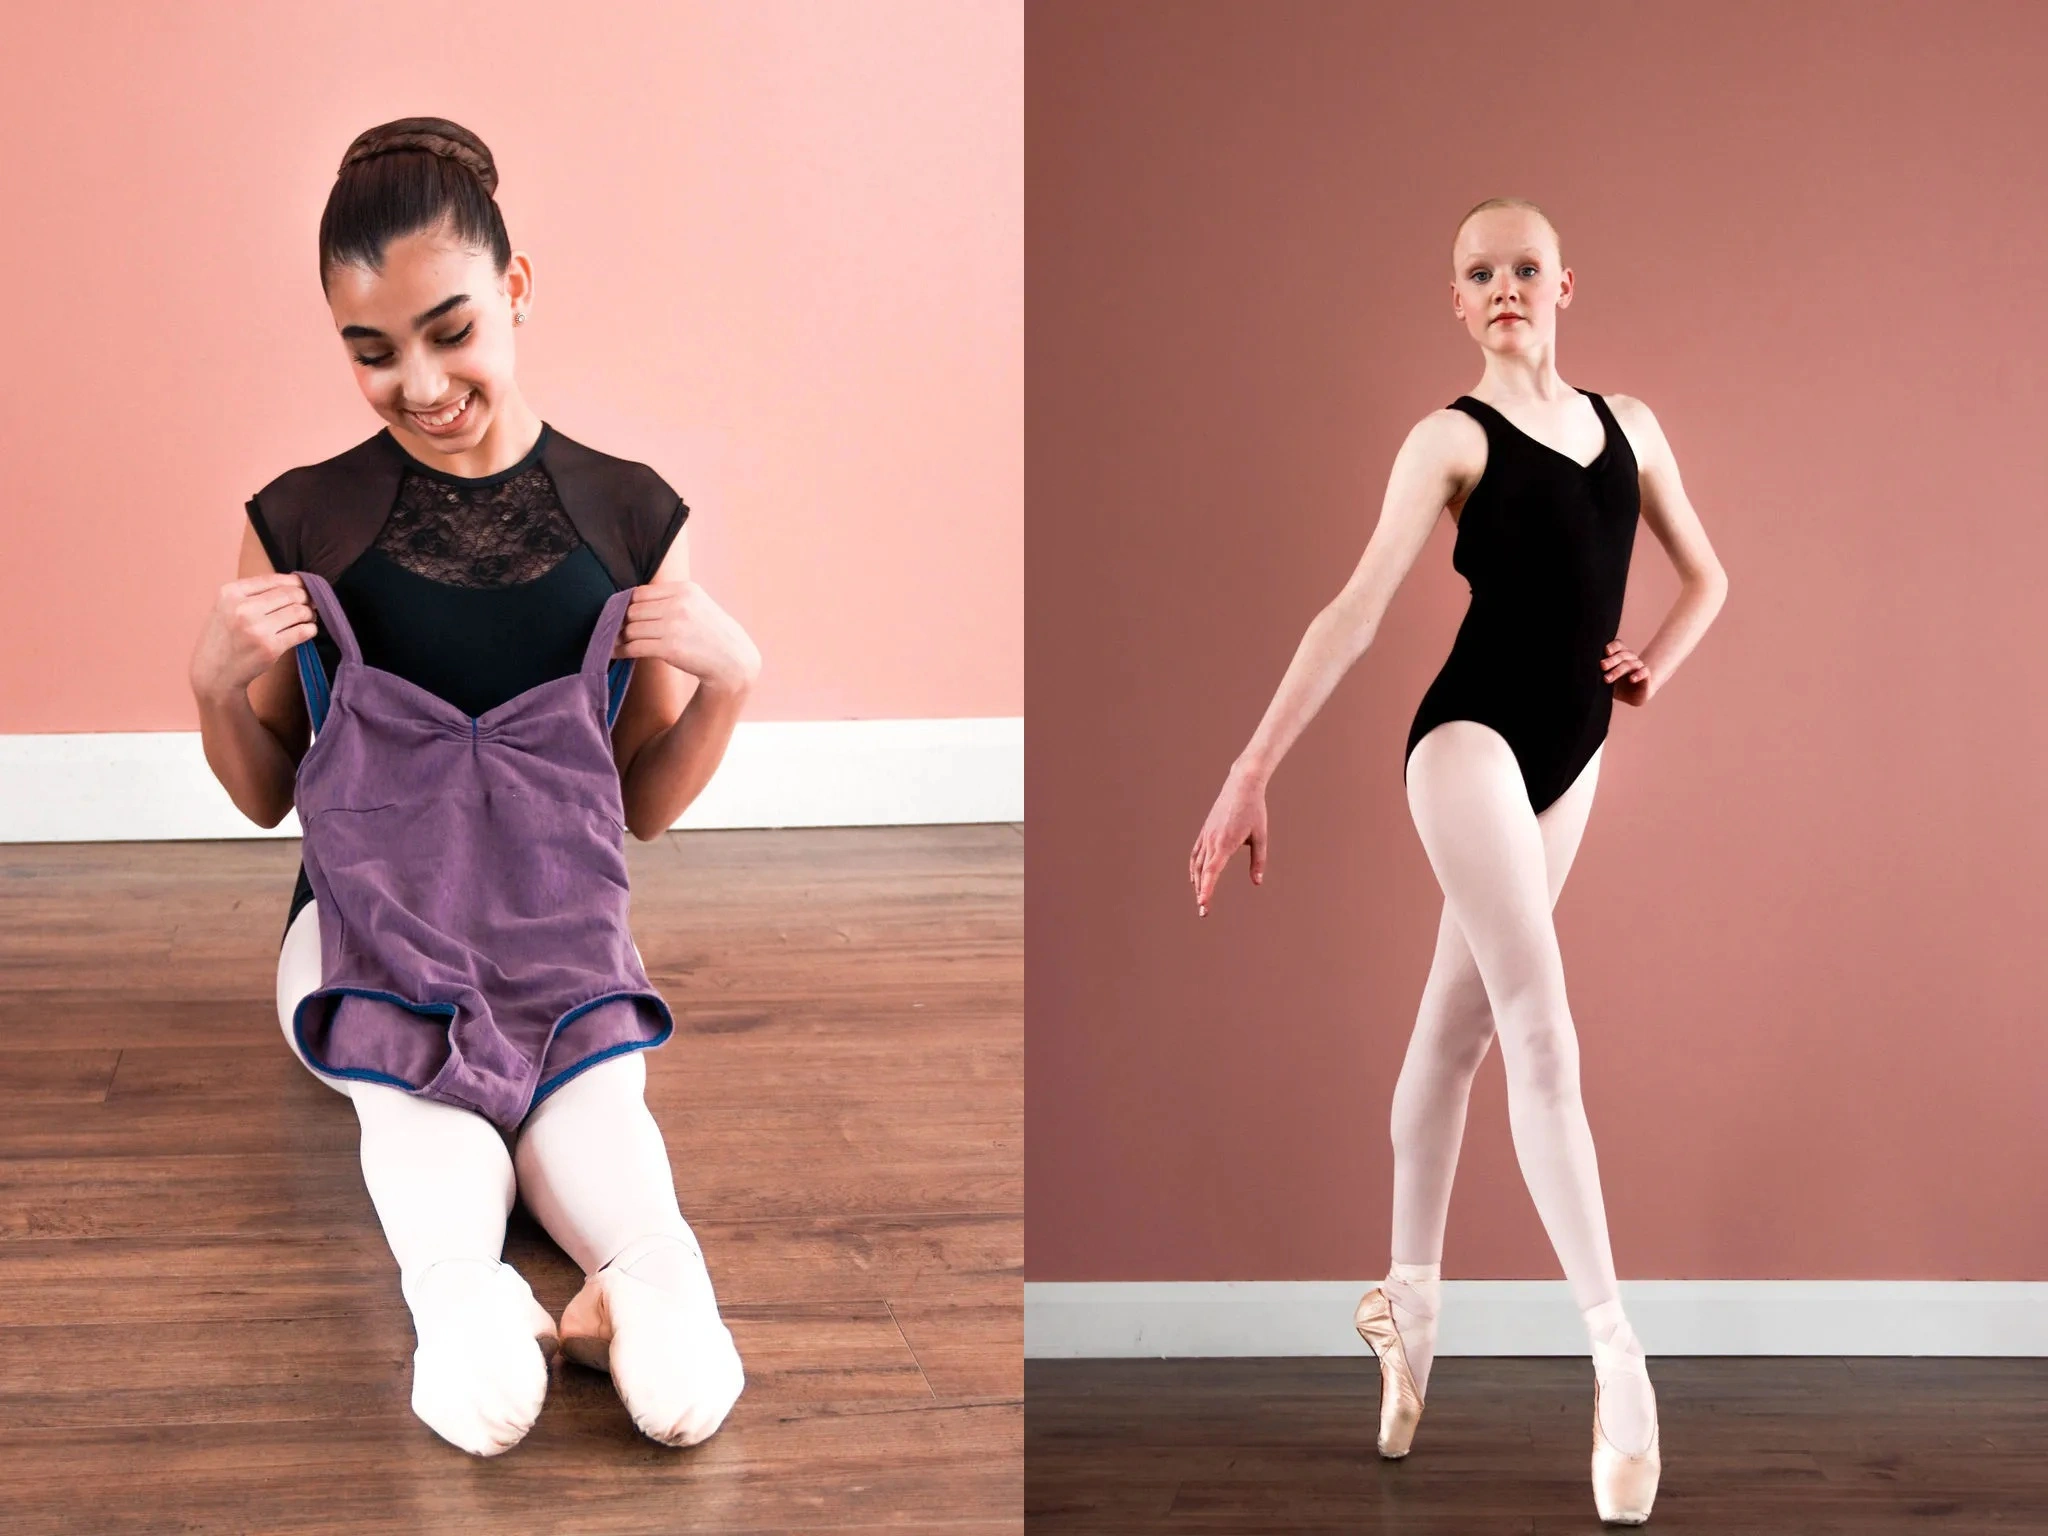 Pink full foot tights – balletballet